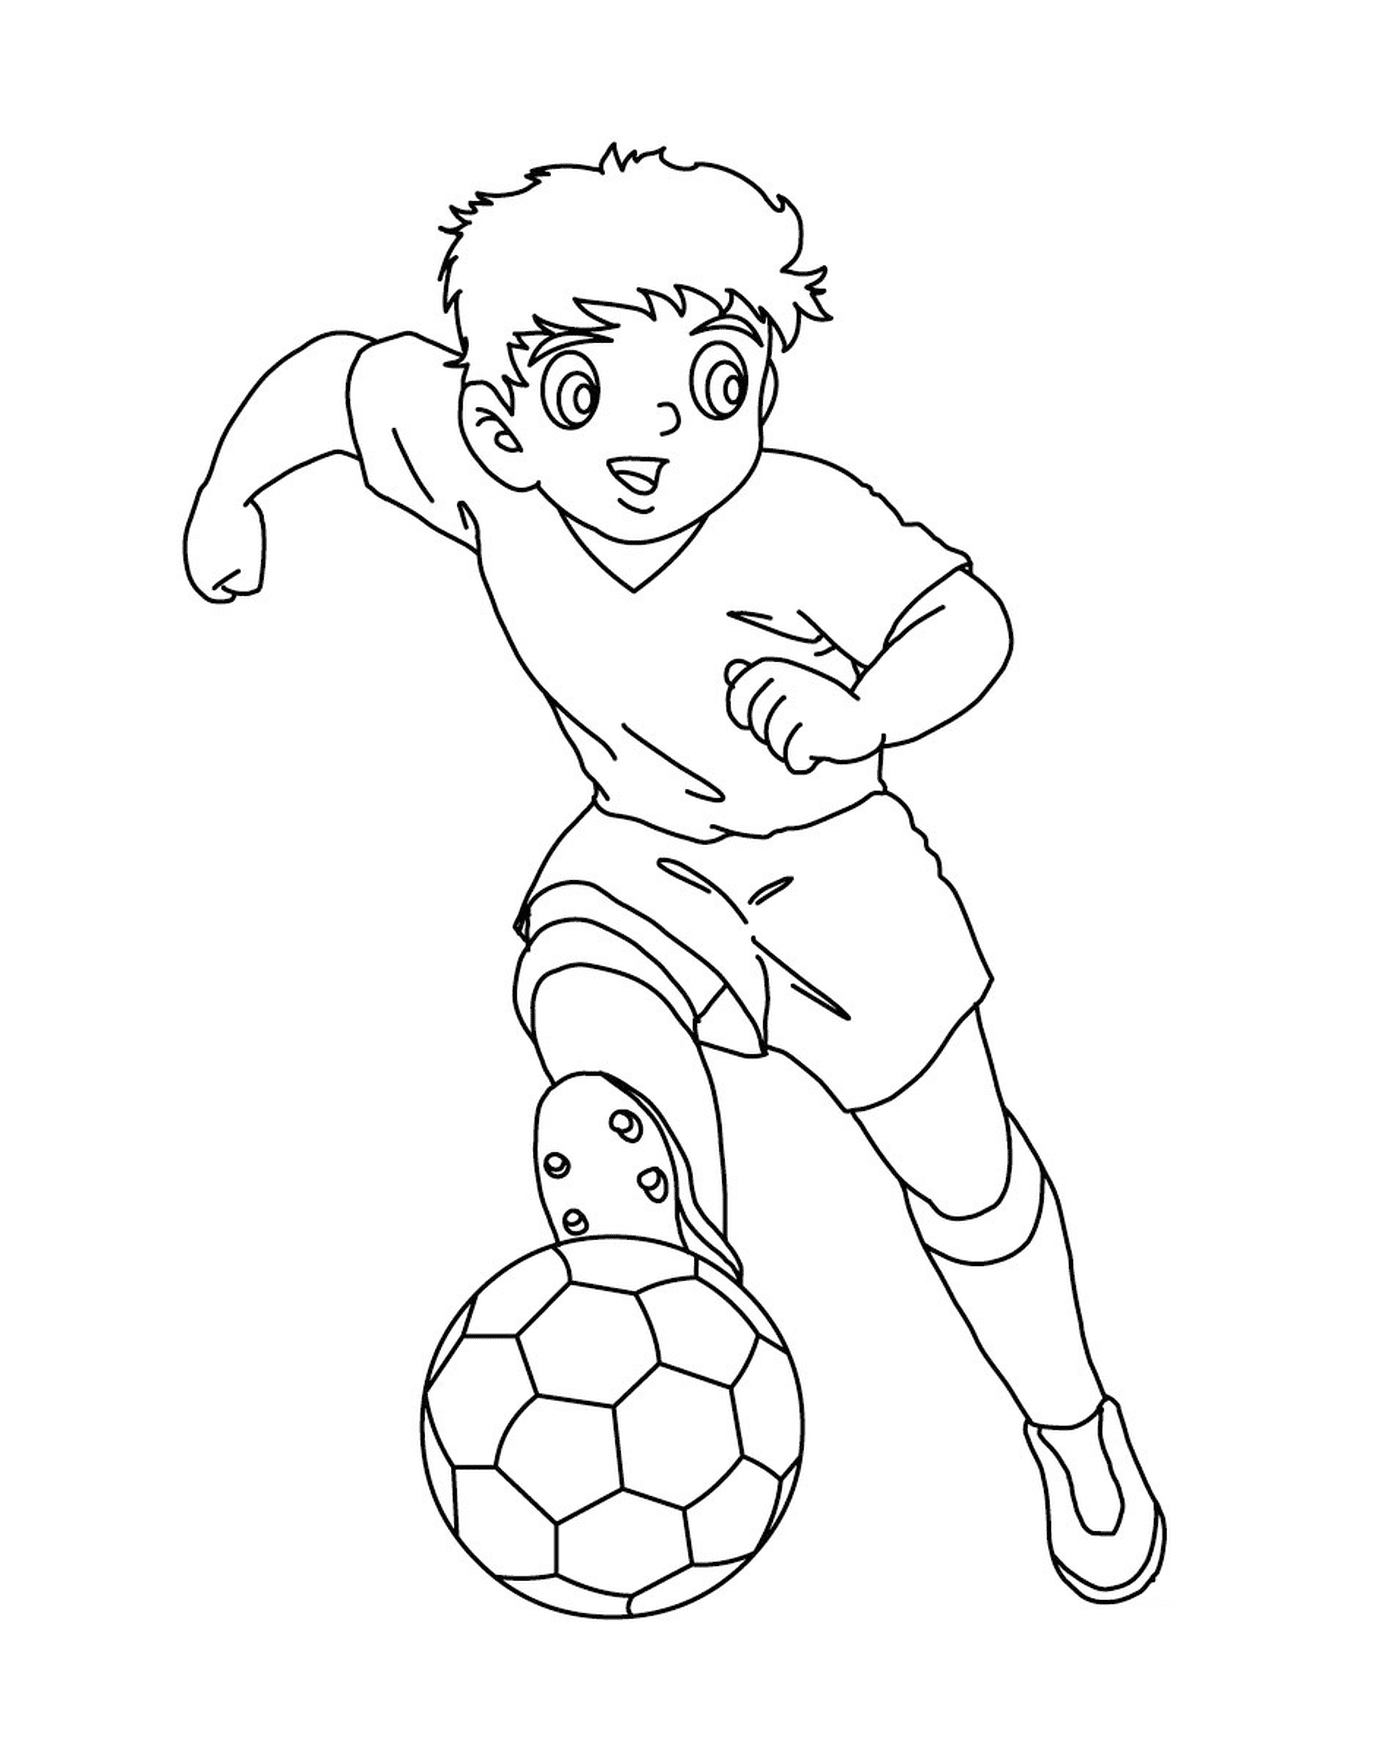  Niño jugando al fútbol como el capitán Tsubasa 